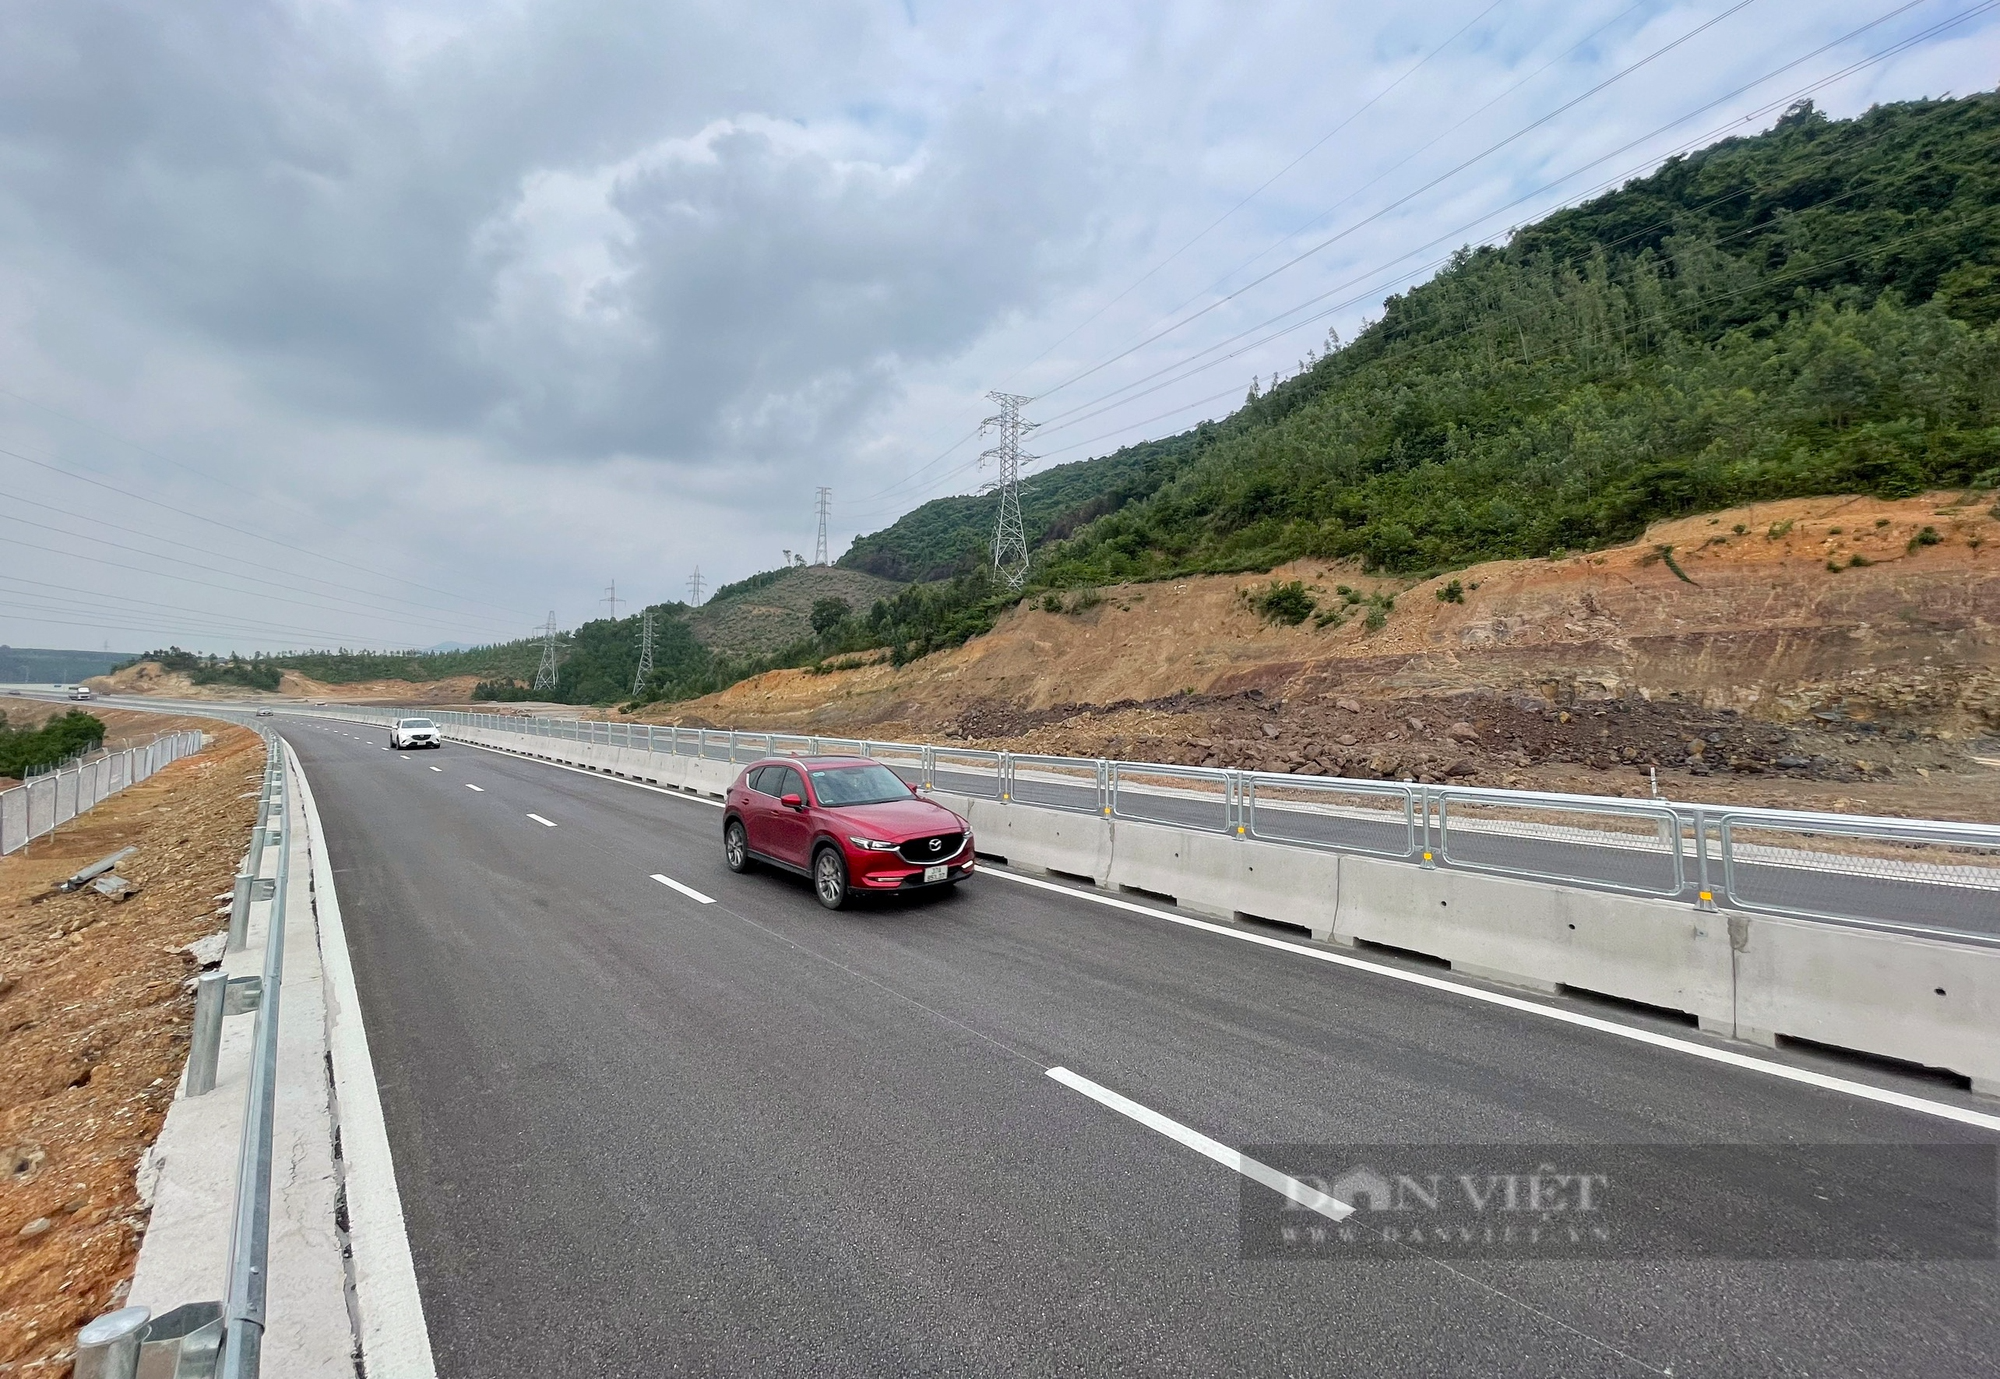 Cao tốc Bắc Nam đoạn Quốc lộ 45 Nghi Sơn, Nghi Sơn - Diễn Châu sau hơn 1 tháng đi vào hoạt động - Ảnh 2.